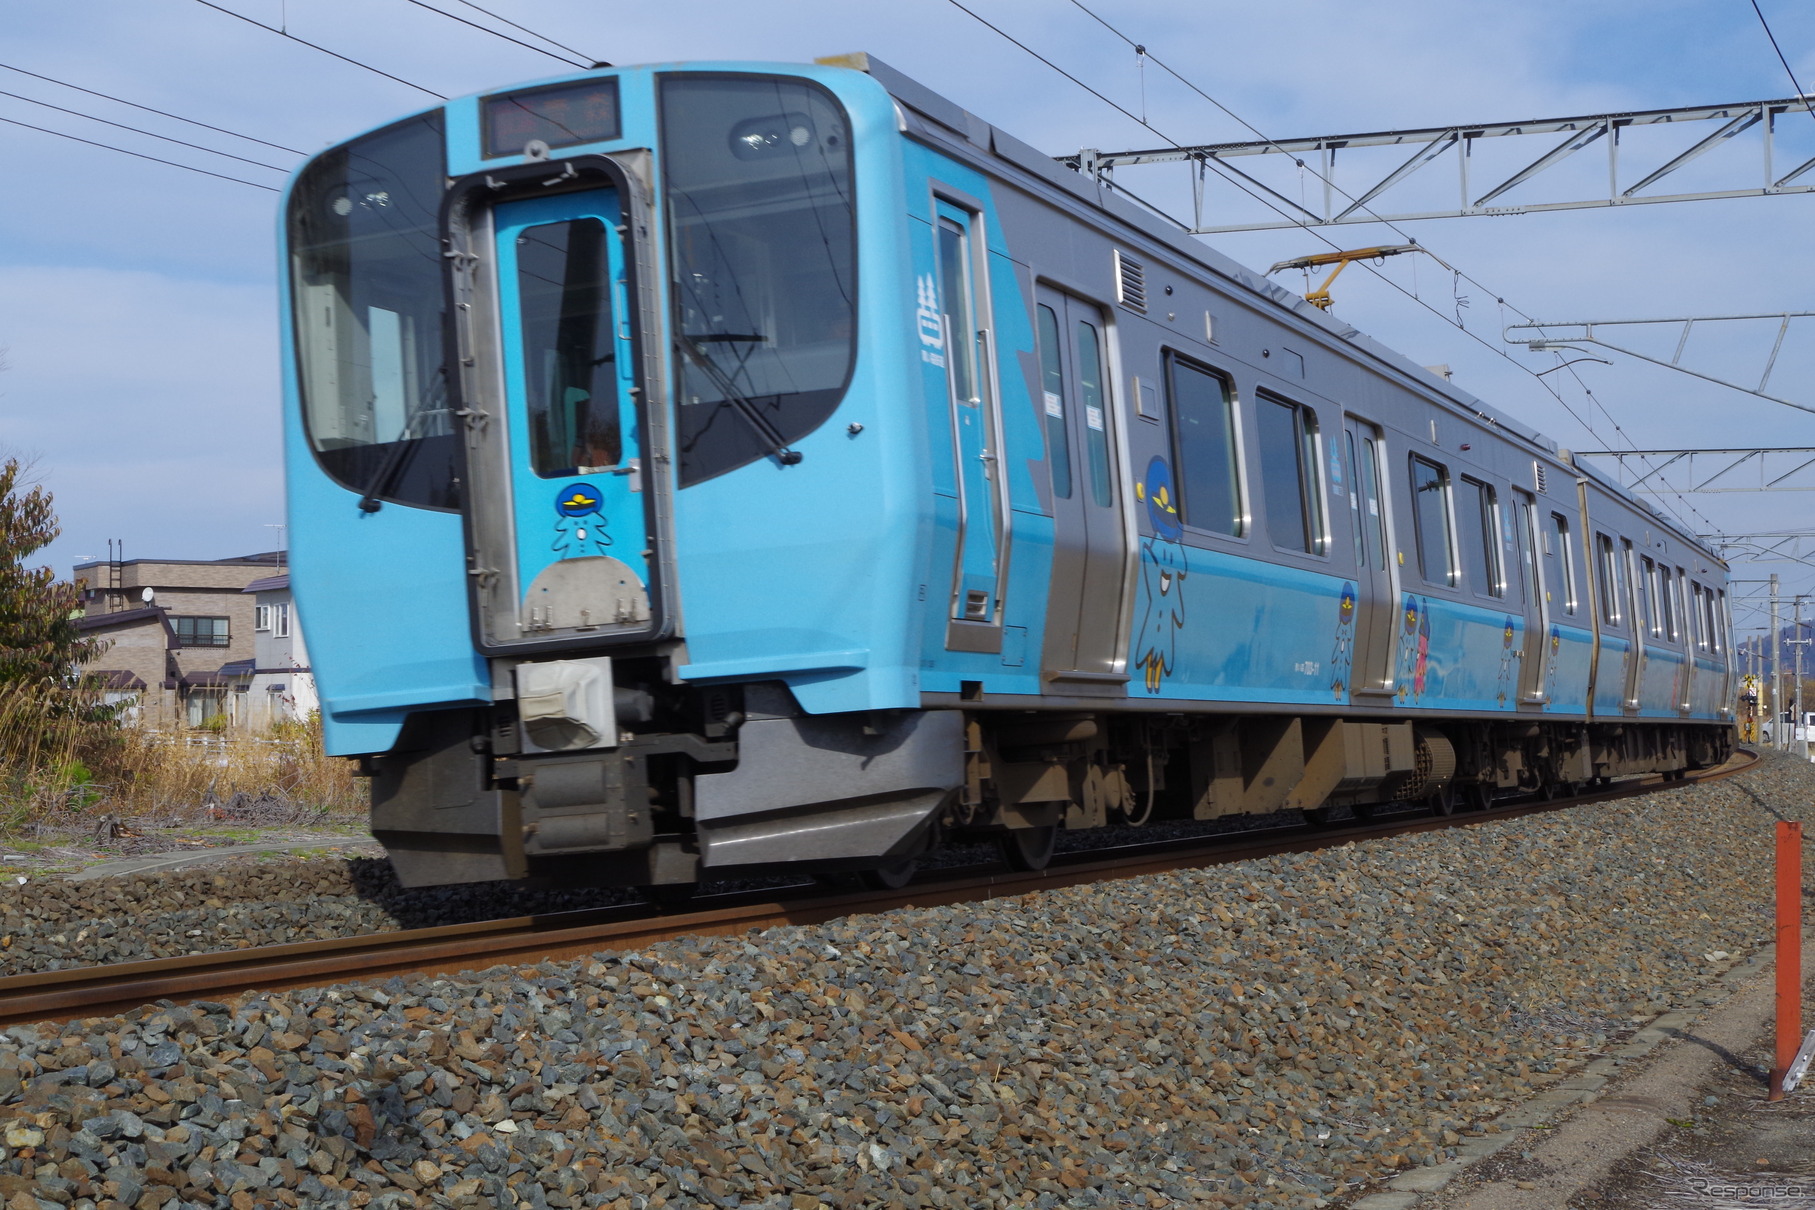 今回の会場アクセス列車は1往復増えて3往復運行される。写真は青い森鉄道の青い森703系。